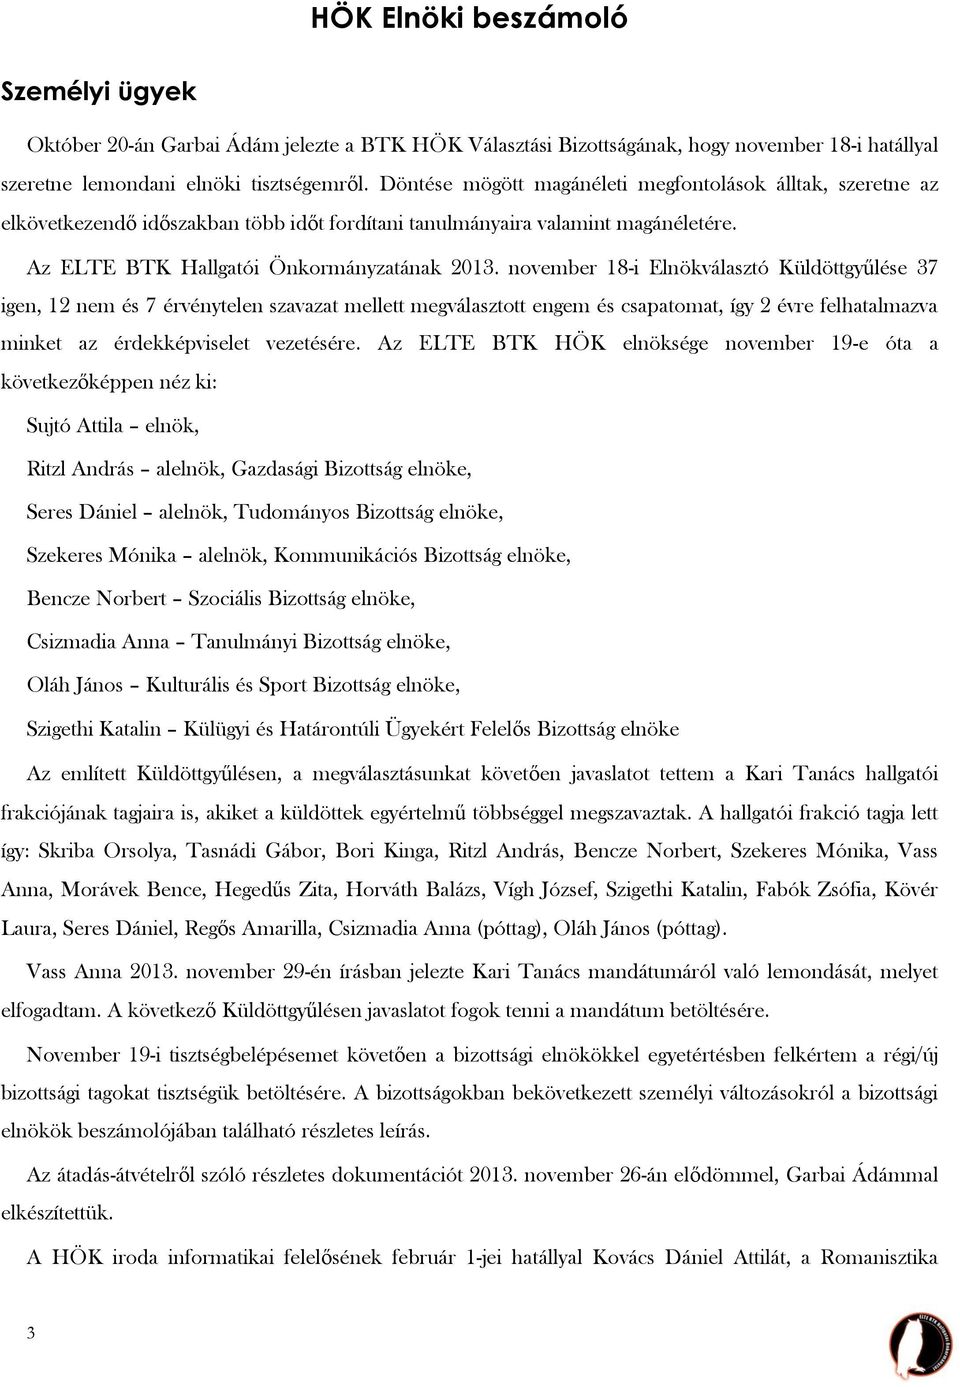 Beszámoló az ELTE BTK Hallgatói Önkormányzatának 2013/2014- es tanév őszi  félévében végzett munkájáról - PDF Free Download